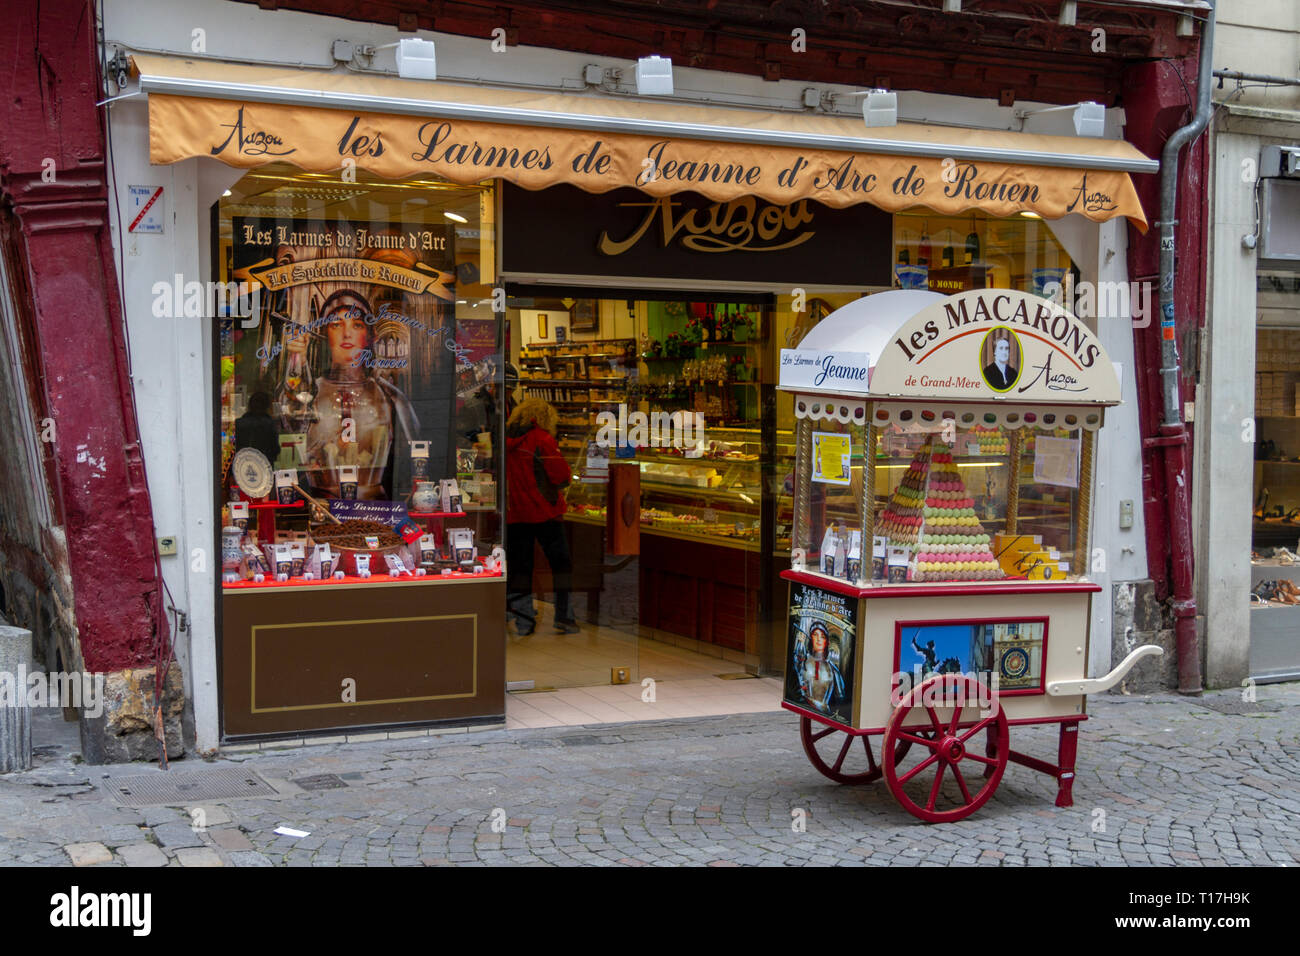 The Auzou Chocolat Macaron/ Larmes de Jeanne d'Arc shop in Rouen, Seine-Maritime, France. Stock Photo